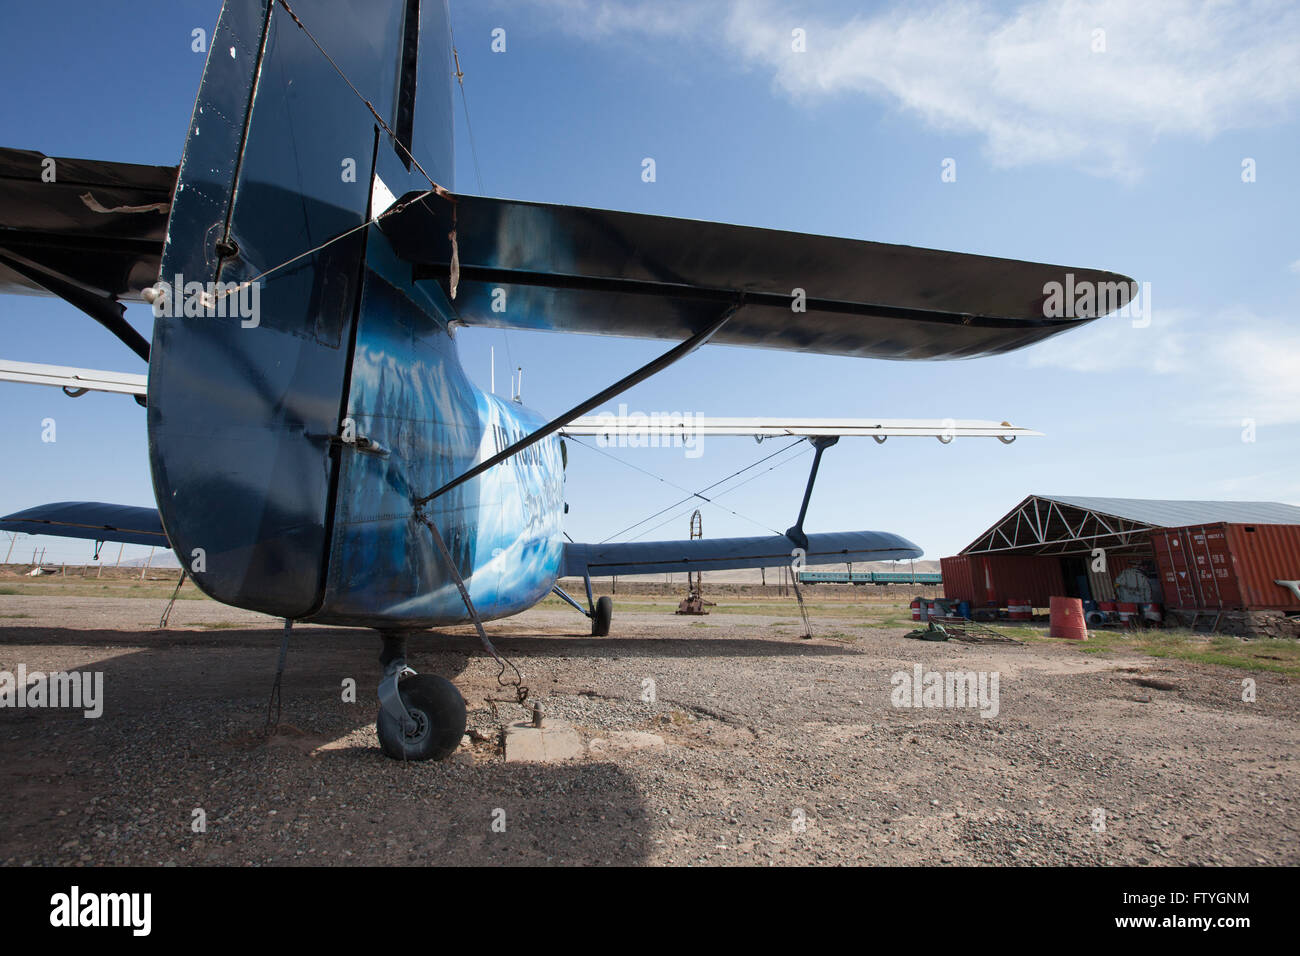 Kazakhstan, Kazakistan, Asia, landed agriculture airplane, biplane near to the hangar. Stock Photo